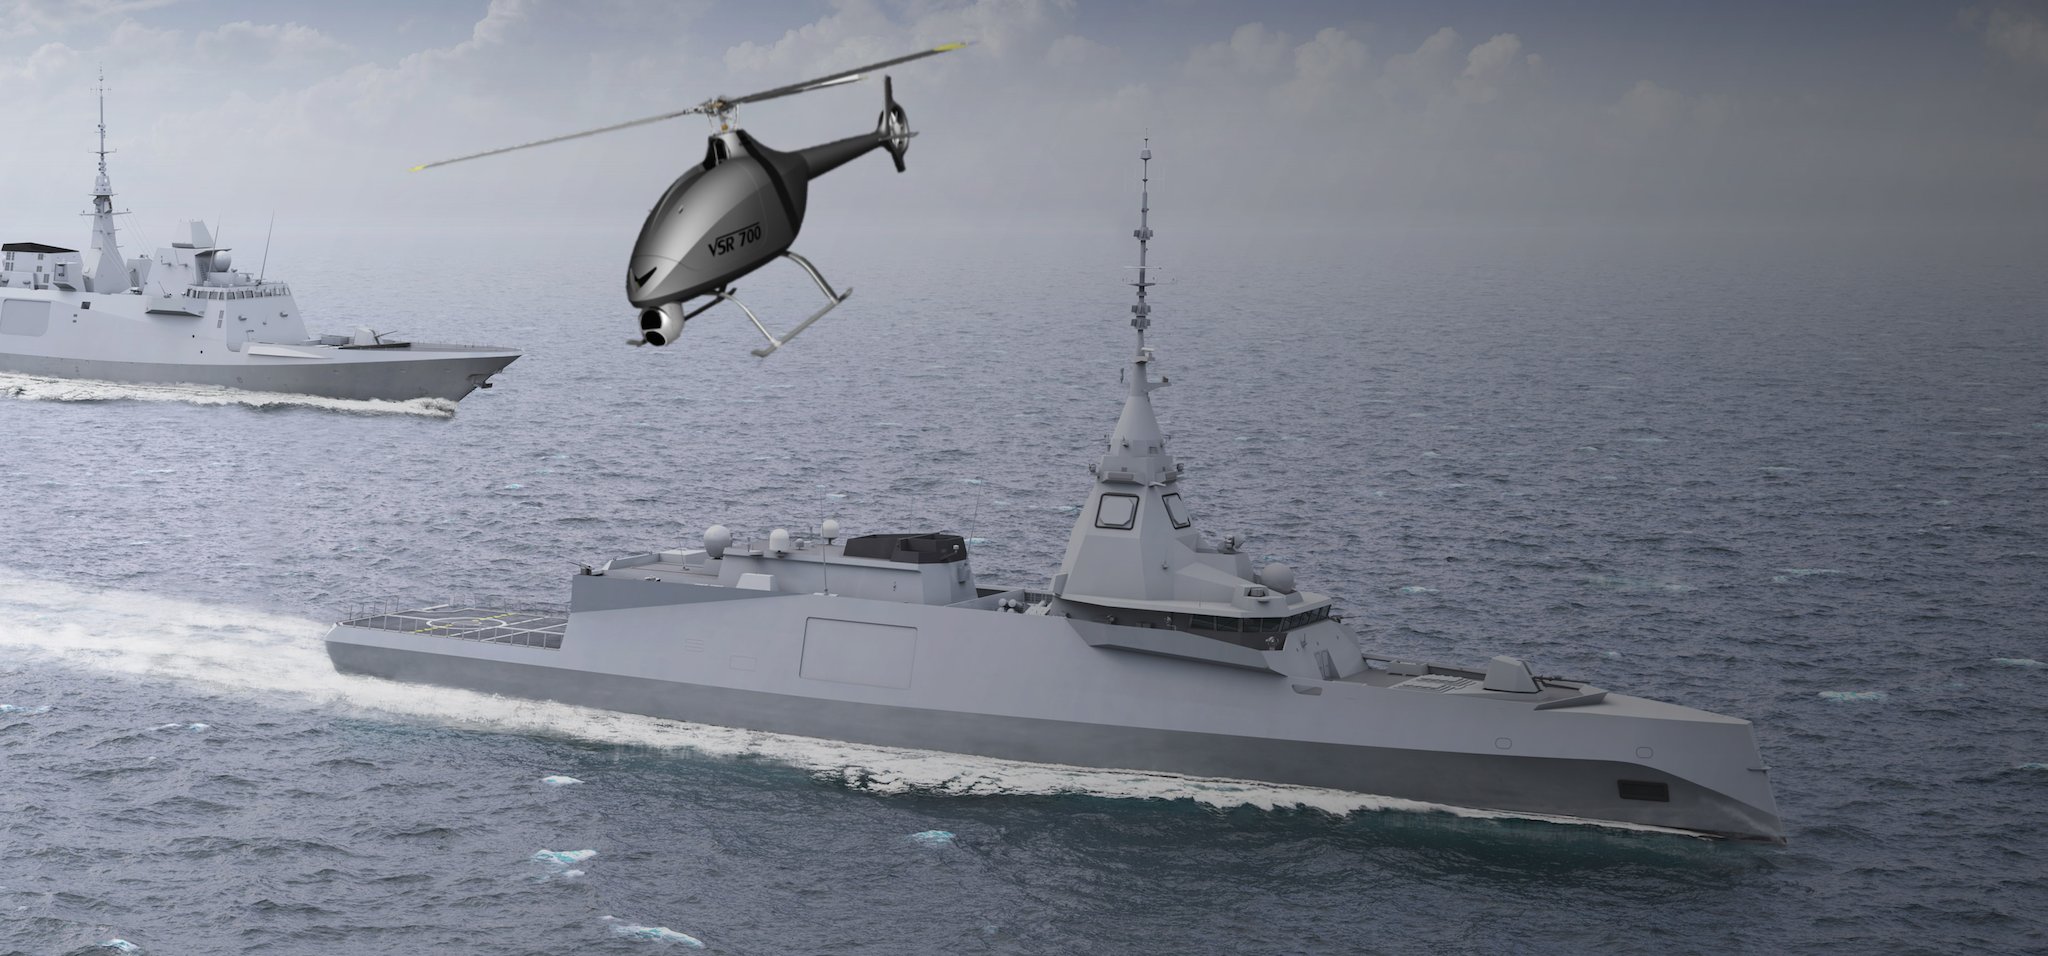 VRS700 sera déployé à partir de bâtiment de projection et de commandement [BPC] de classe Mistral et des frégates de la marine